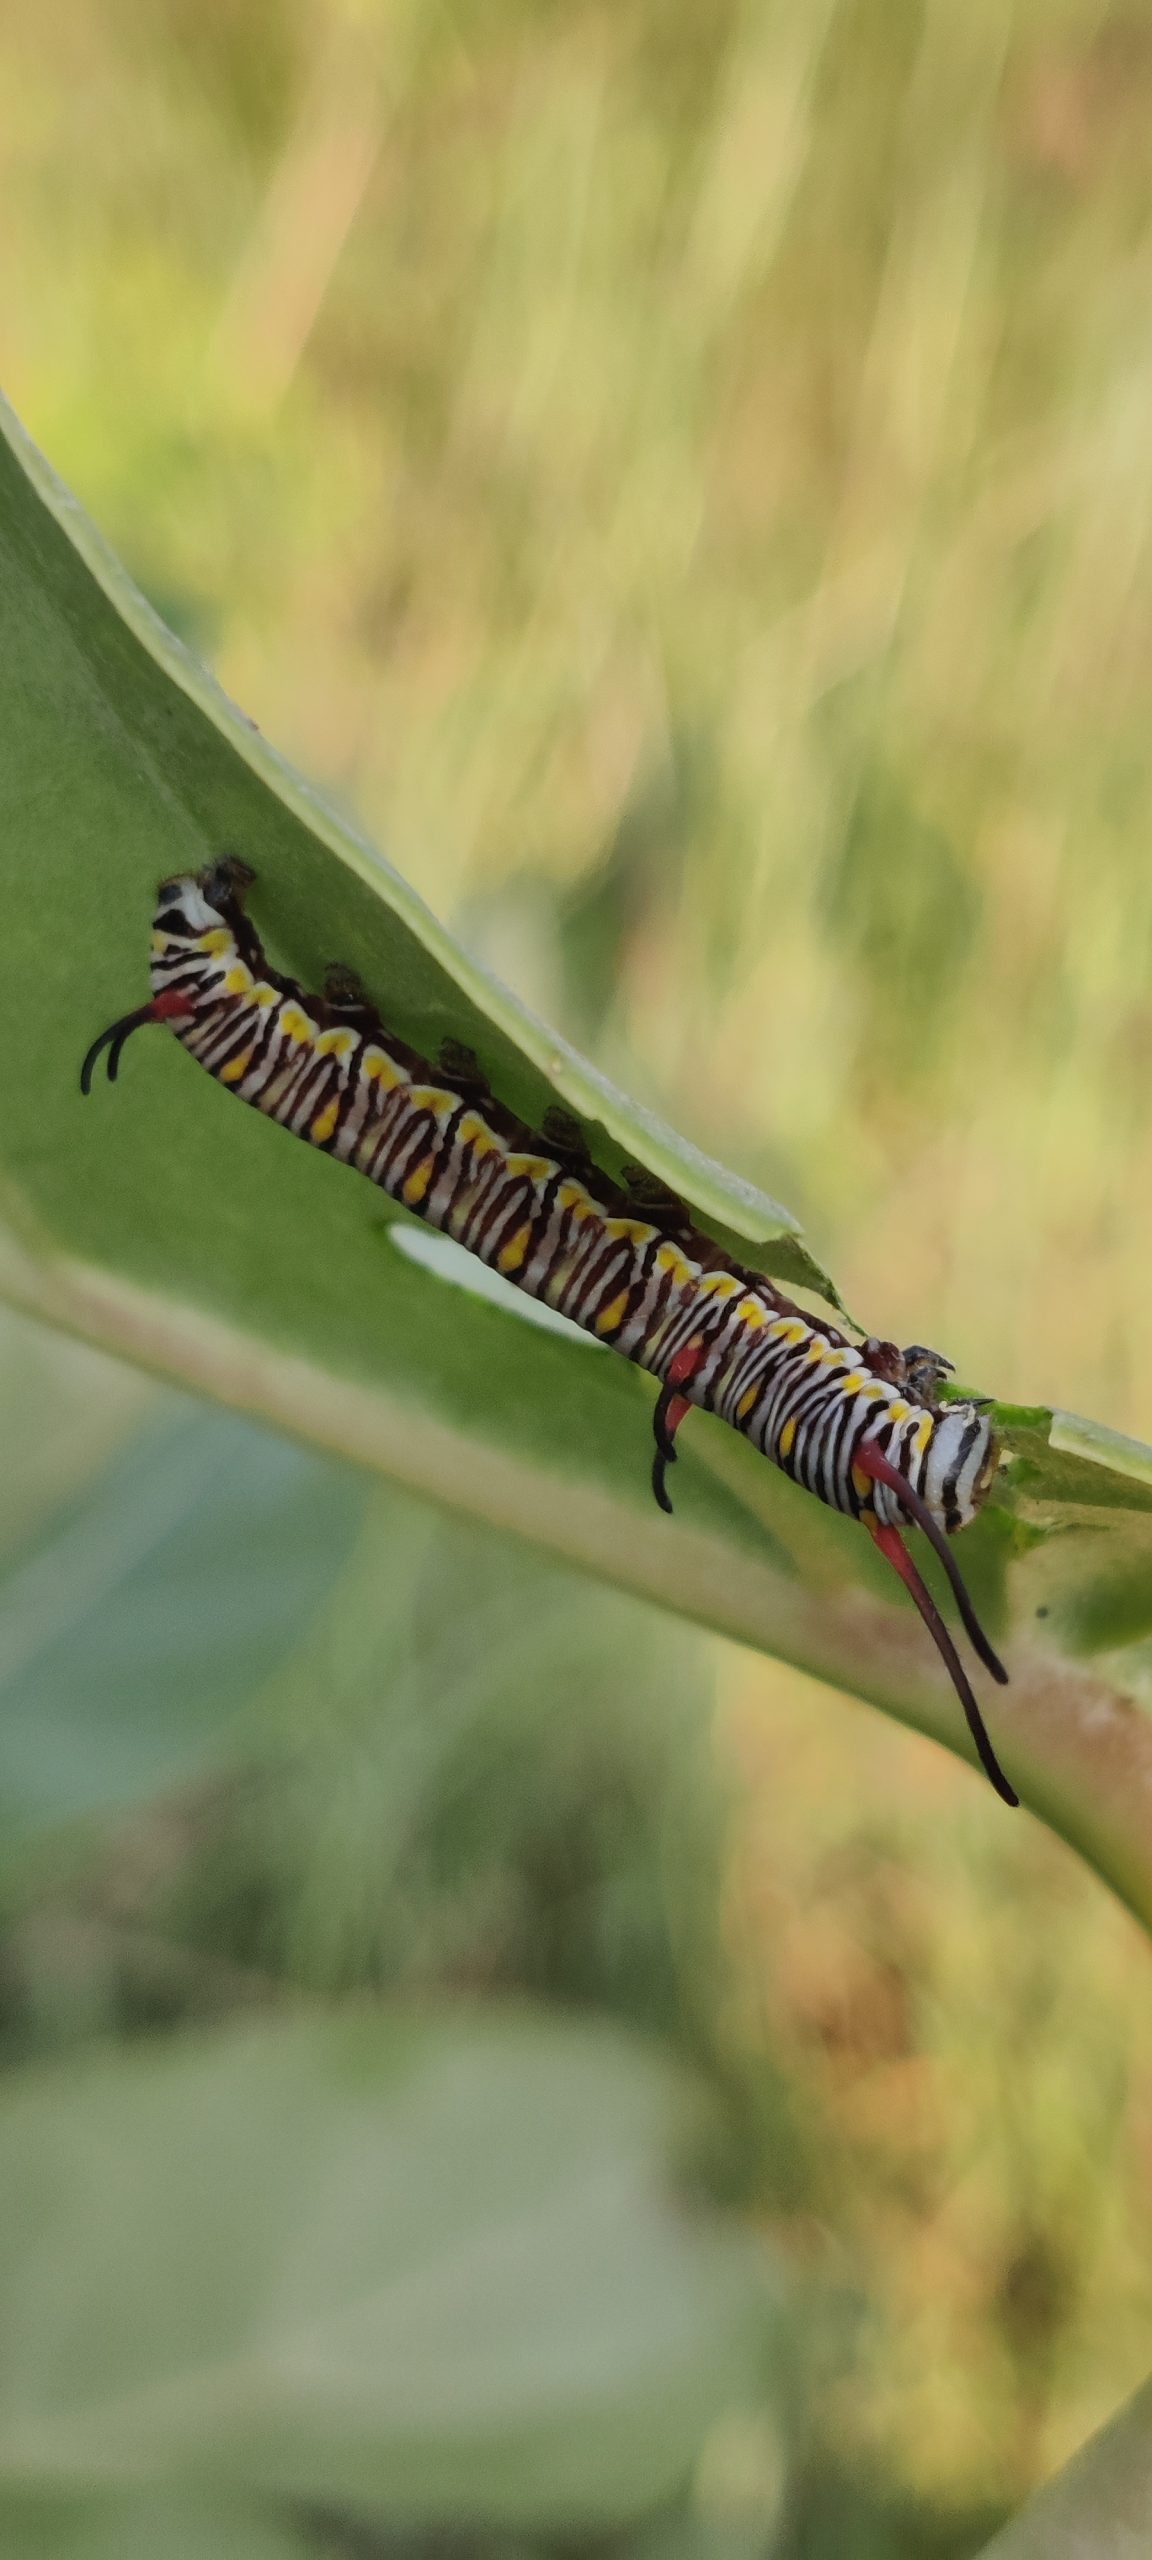 a crawling caterpillar